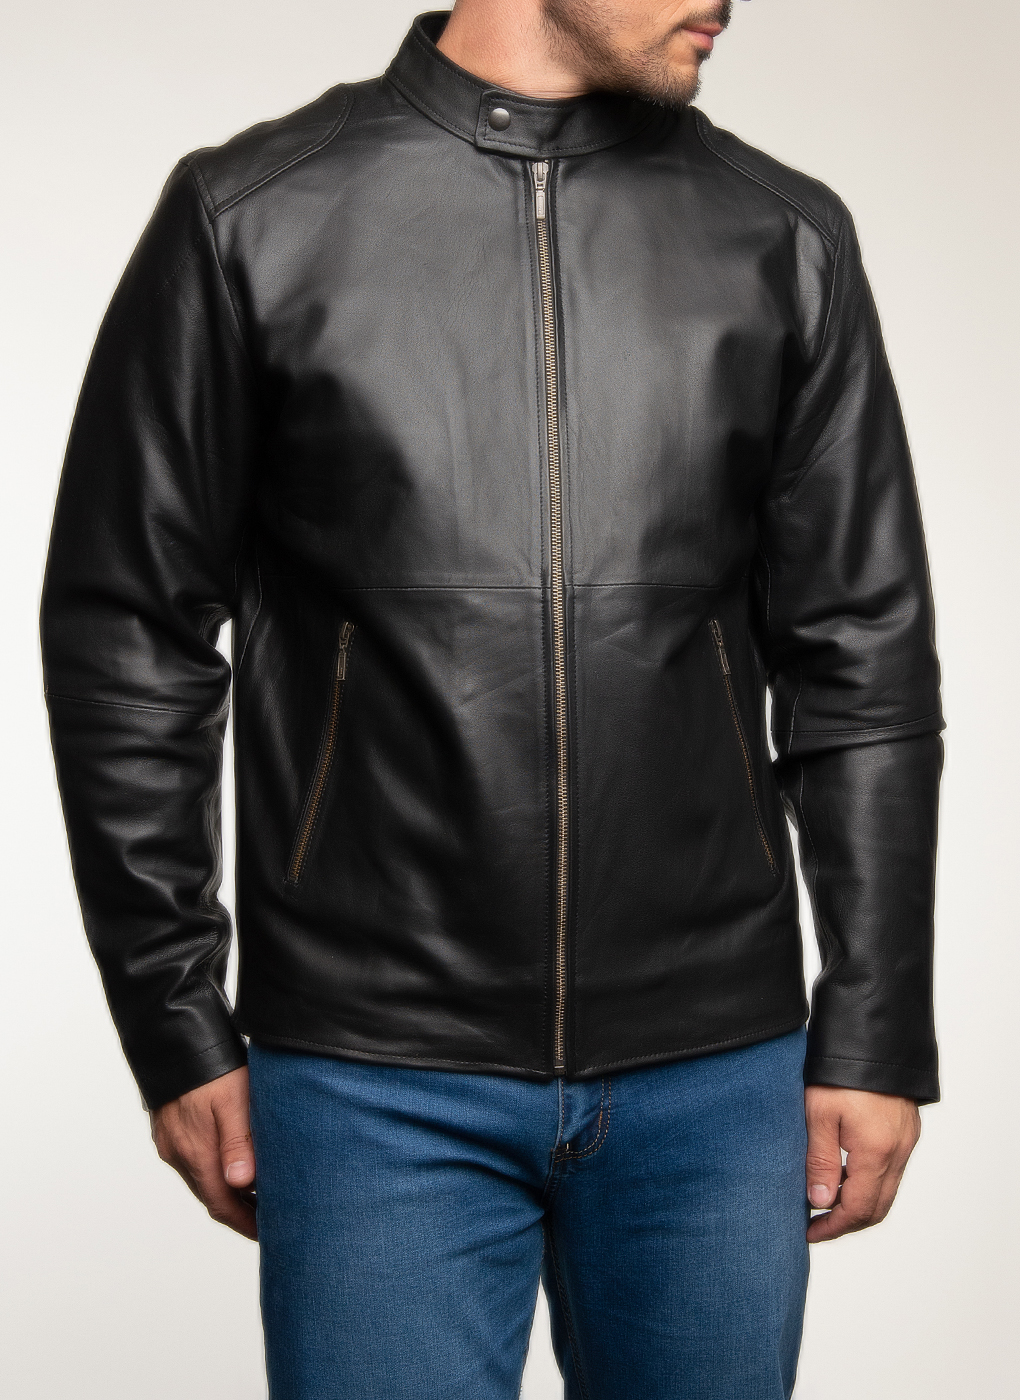 Кожаная куртка мужская Каляев 62652 черная 58 RU